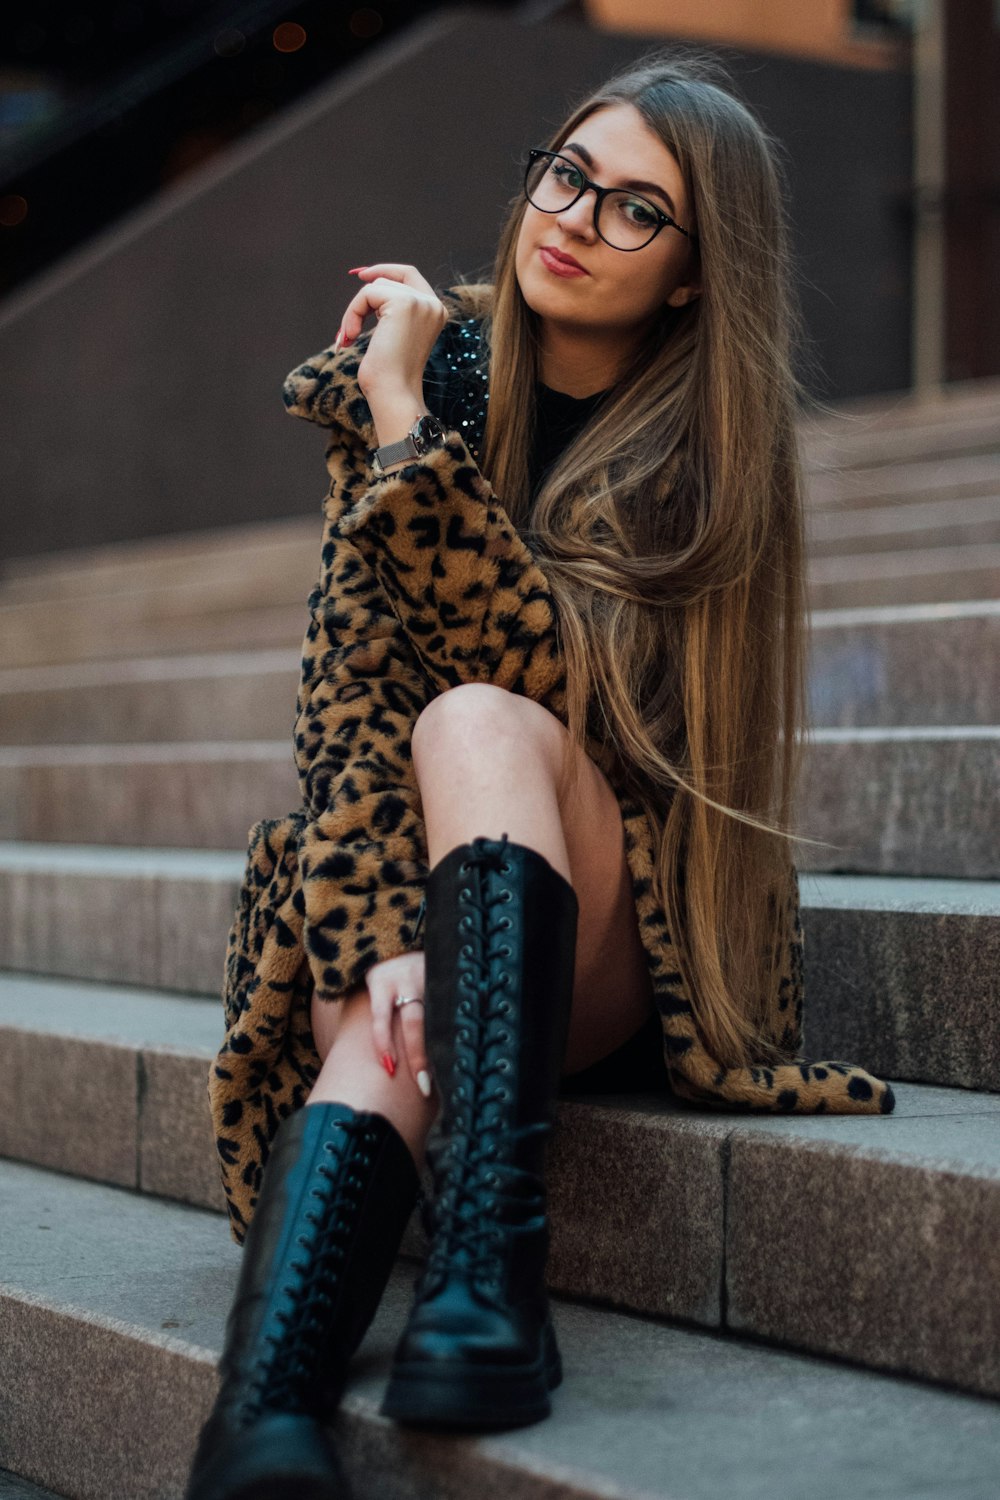 Mujer con abrigo con estampado de leopardo y botas negras sentada en escaleras de hormigón